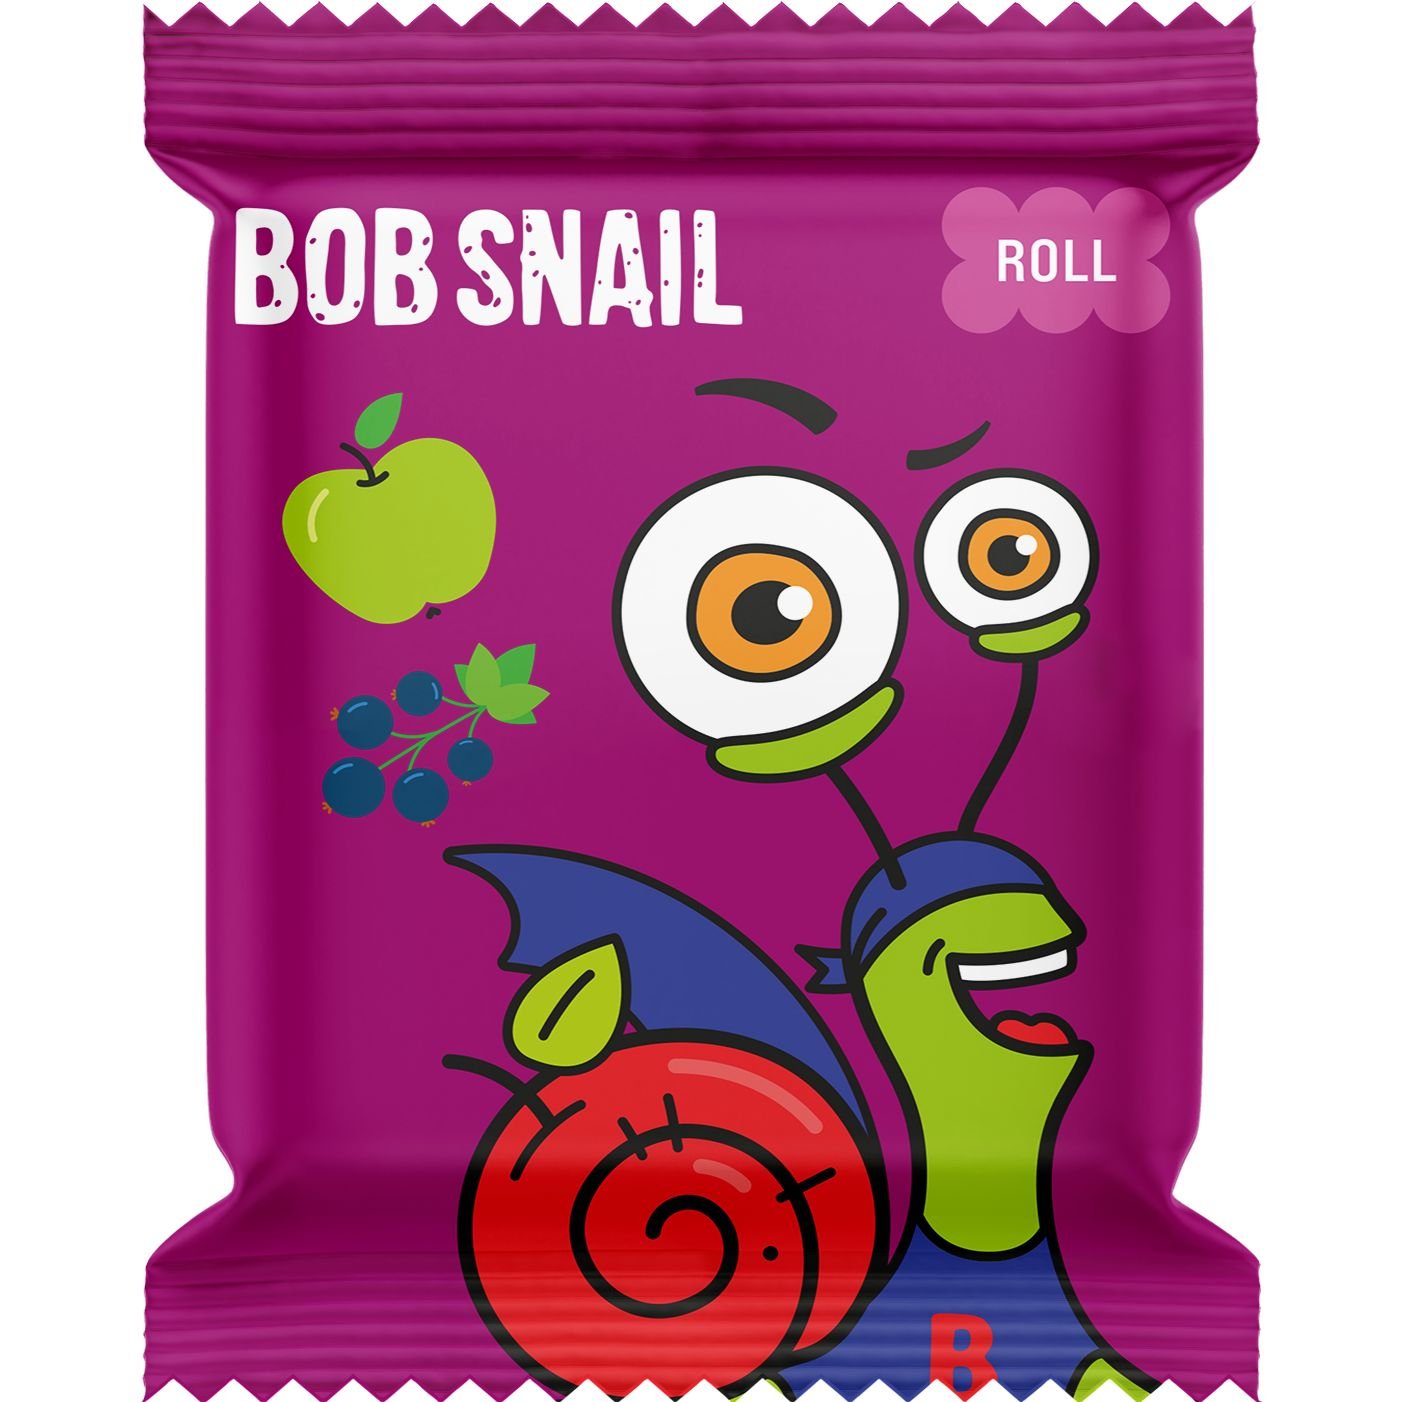 Фруктовые яблочно-смородиновые конфеты Bob Snail 100 г (10 шт. х 10 г) - фото 2